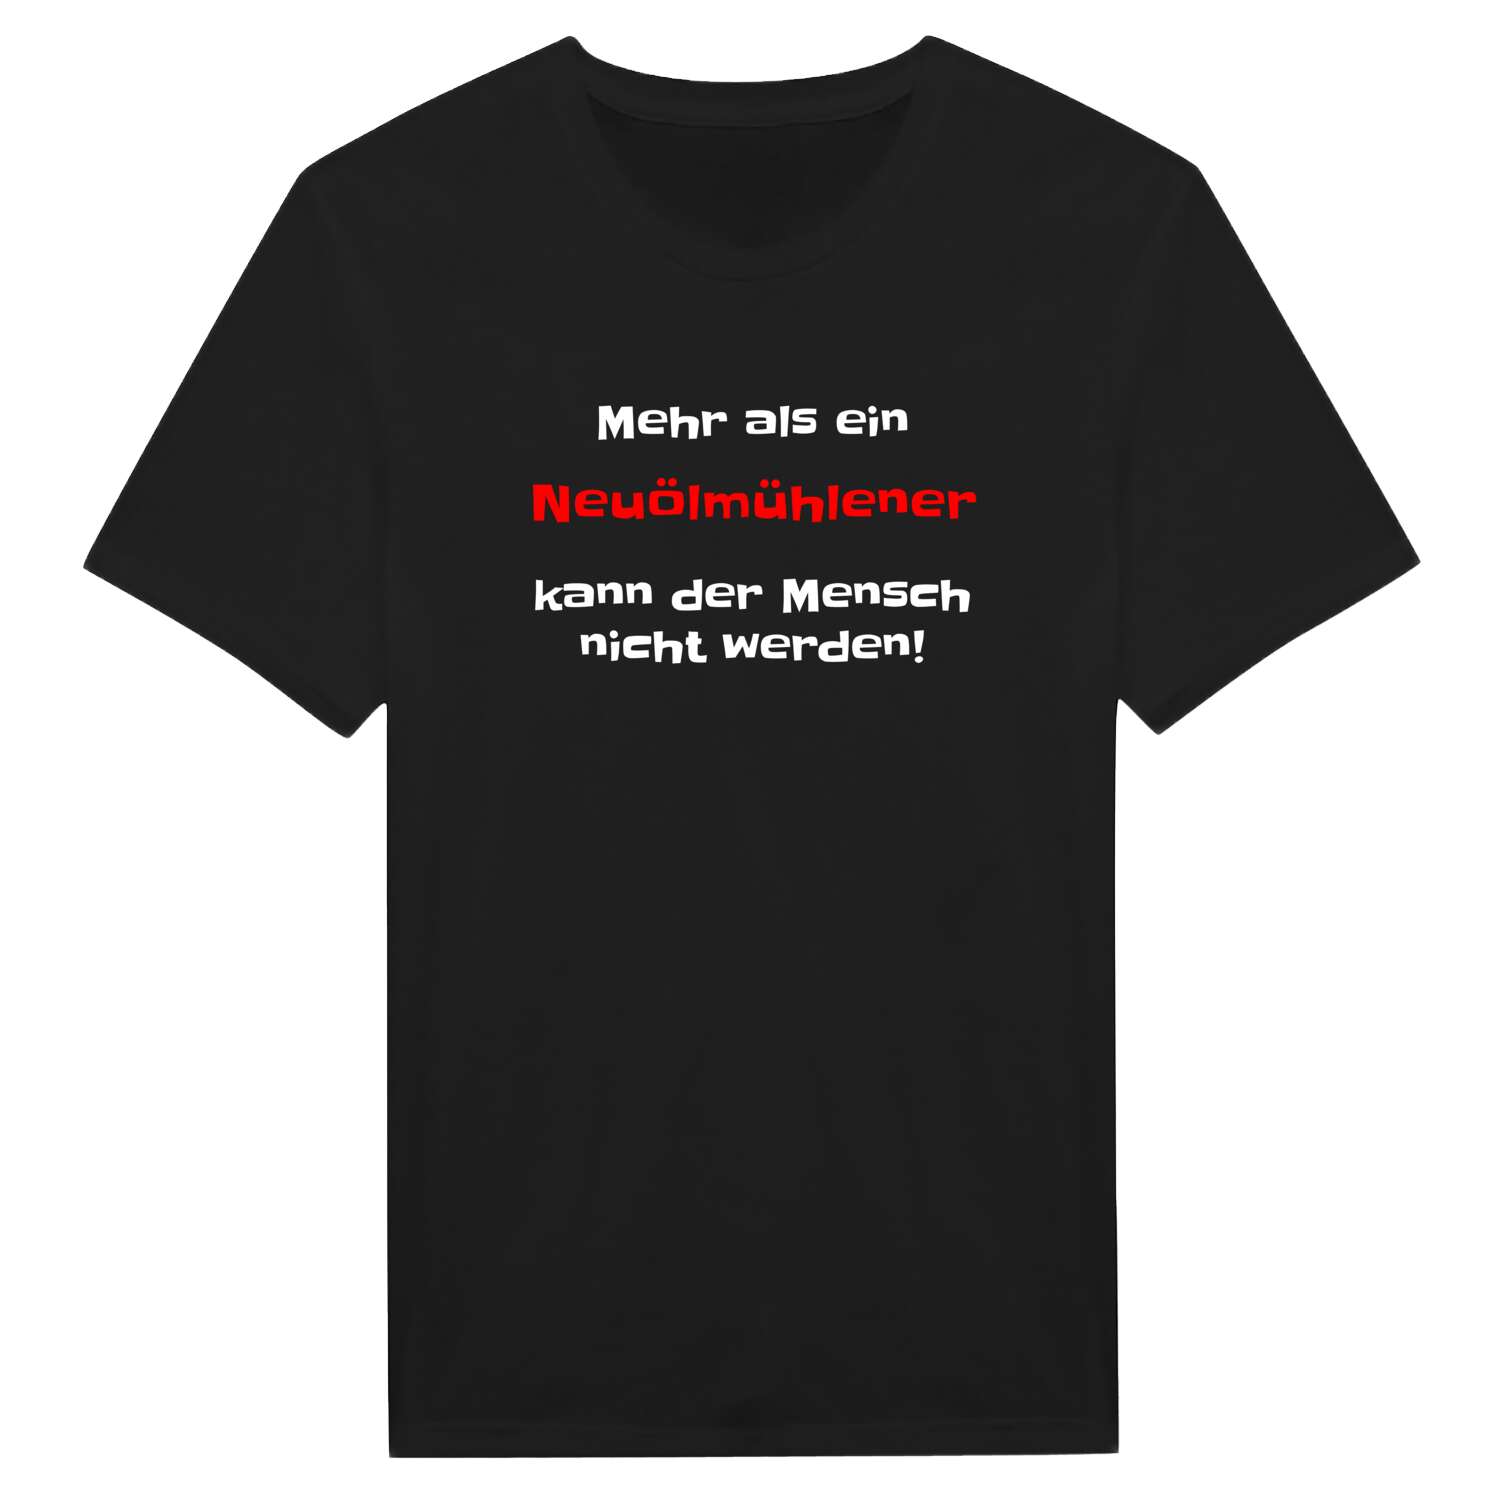 Neuölmühle T-Shirt »Mehr als ein«